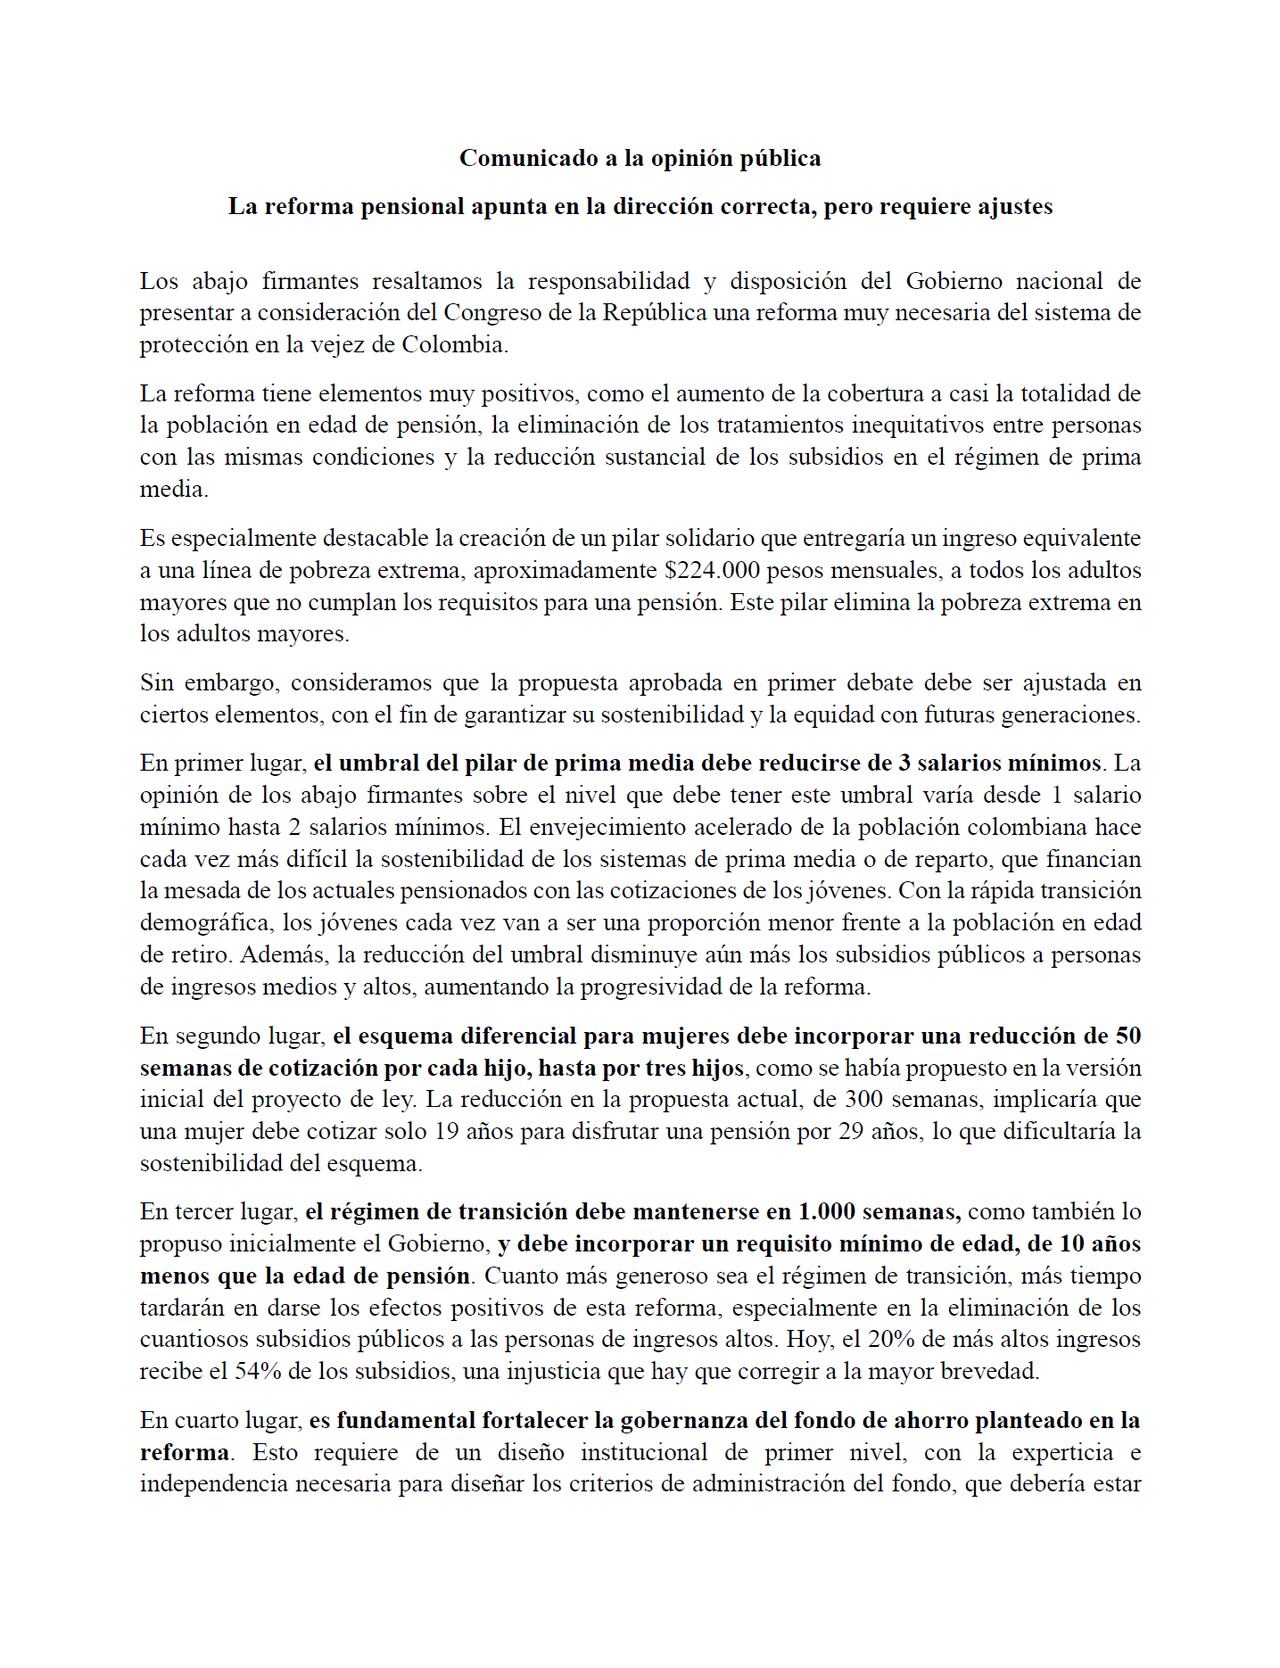 Comunicado de Fedesarrollo firmado por diferentes personas públicas sobre la reforma pensional.